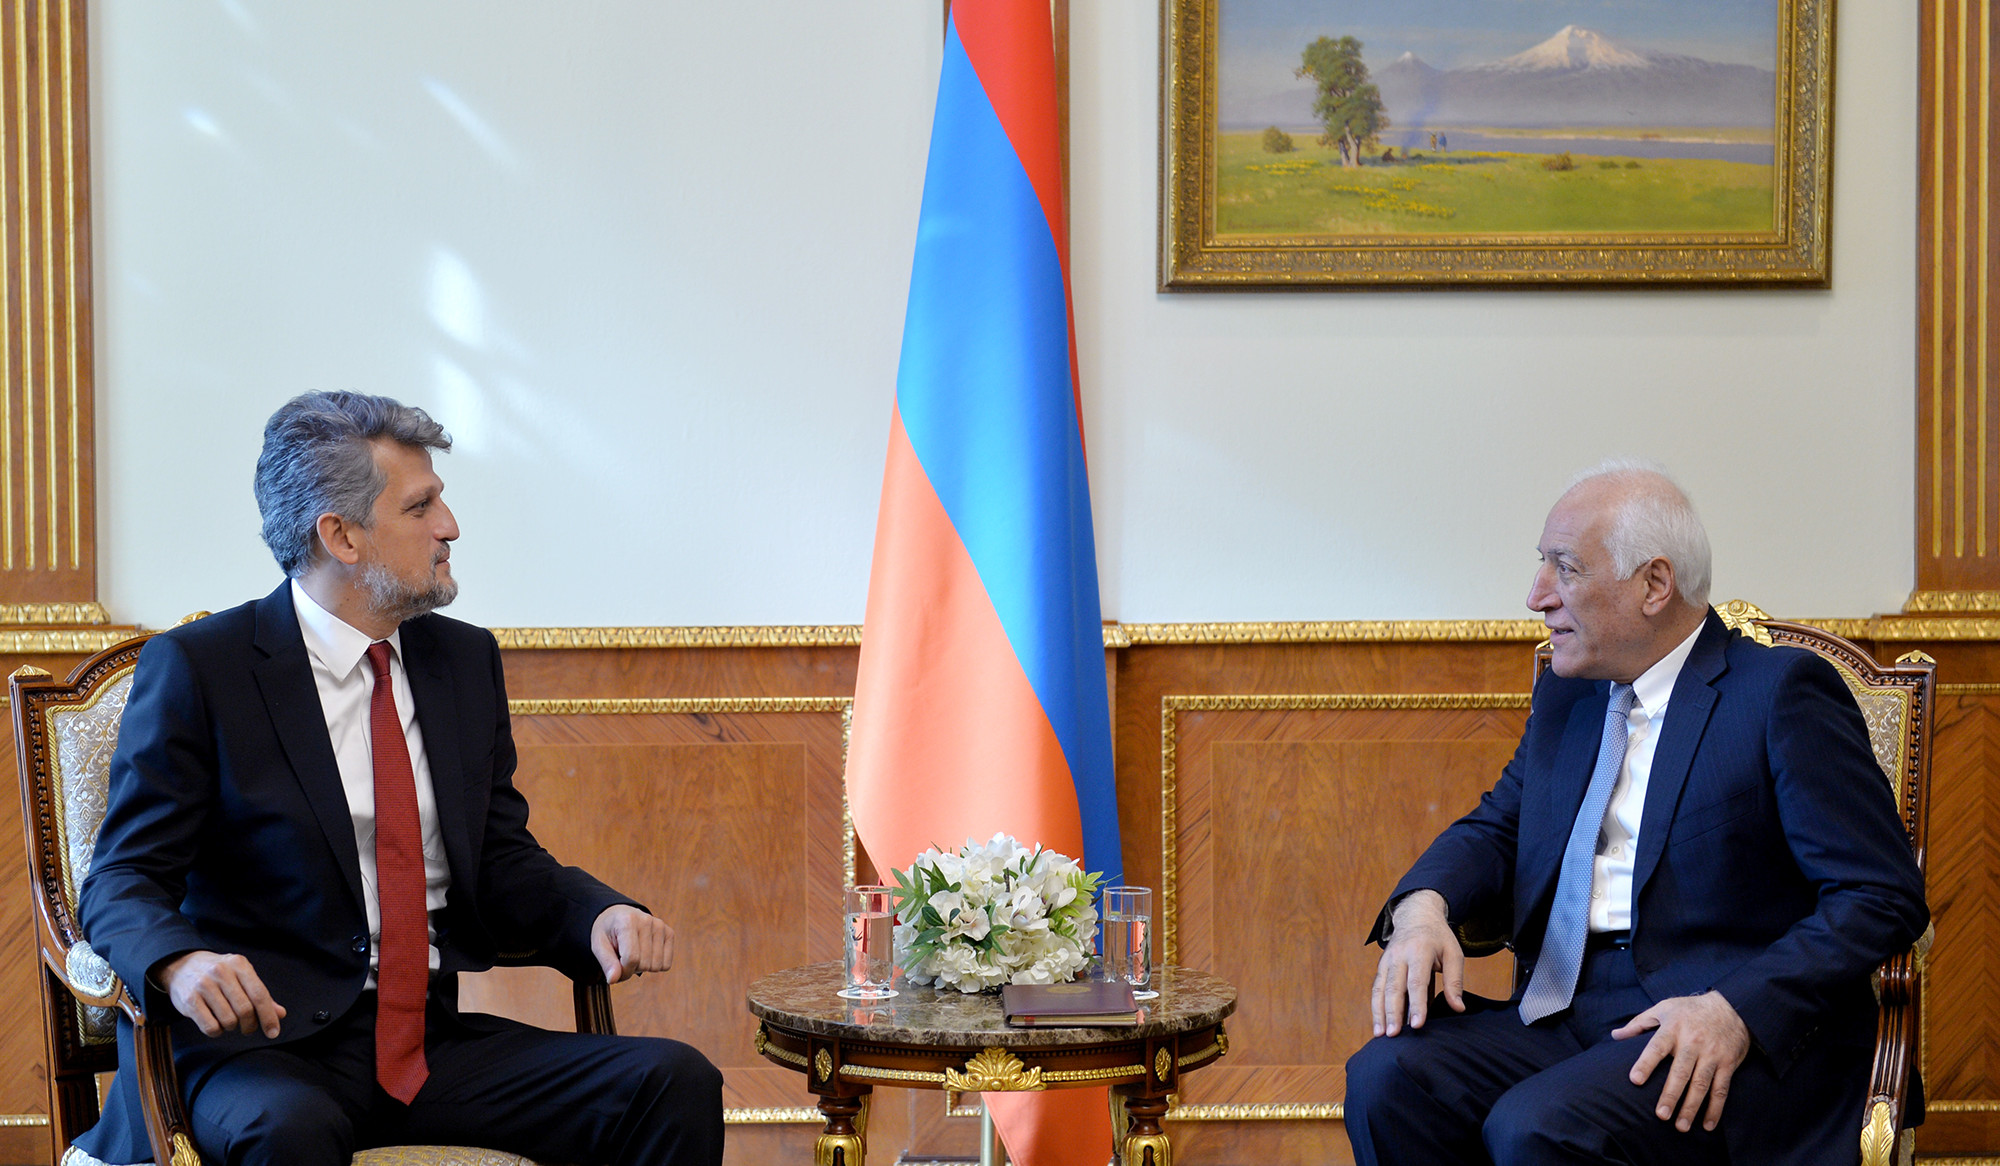 Նախագահը և Կարո Փայլանը քննարկել են Հայաստանի և Թուրքիայի միջև սահմանների բացման հնարավորություններին առնչվող հարցեր